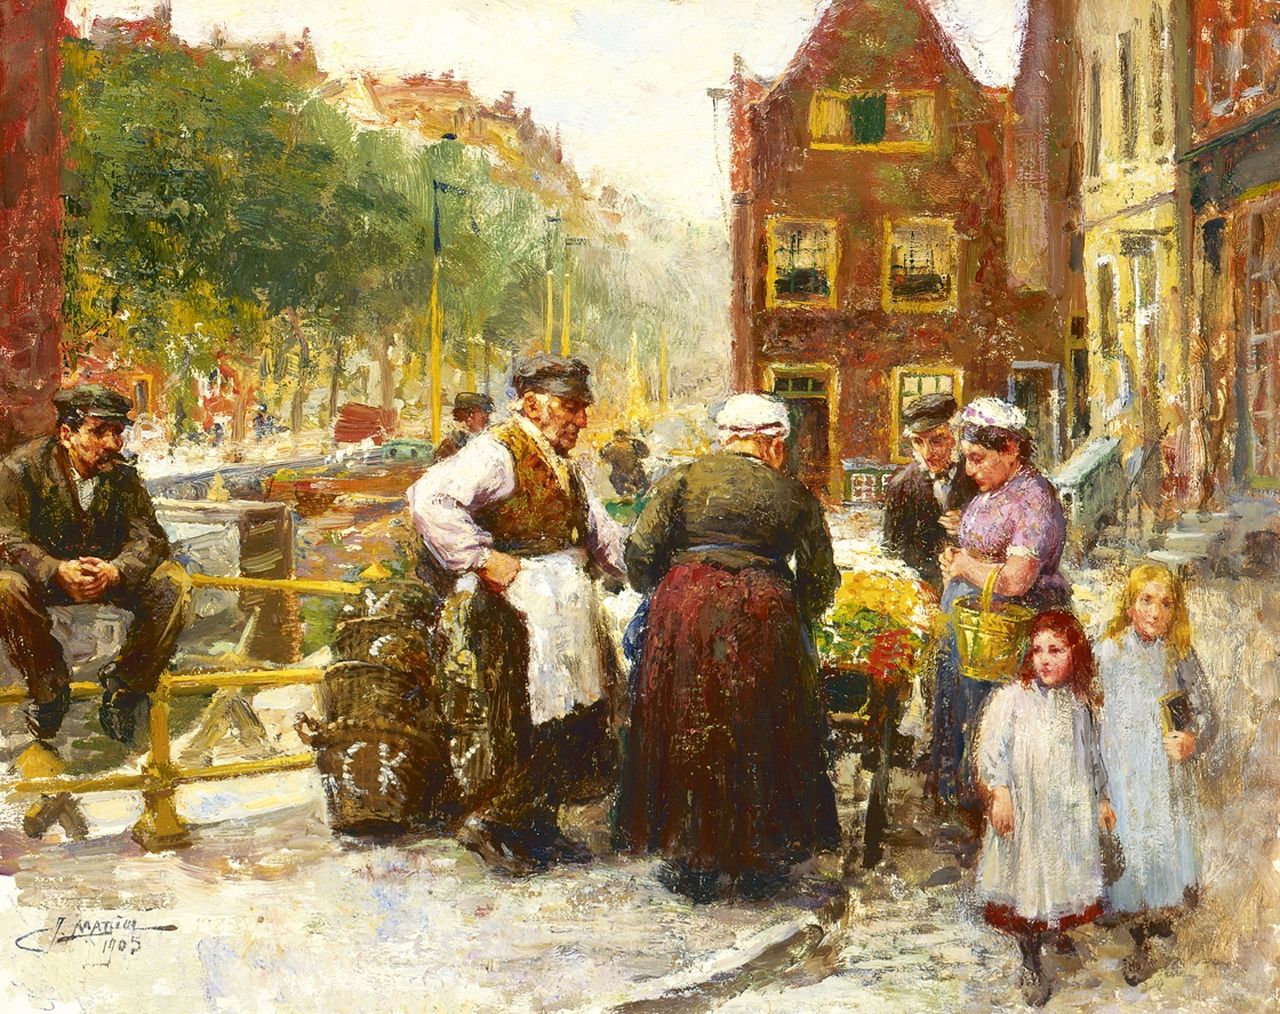 Madiol J.  | Jacob Madiol, Joodse buurt in Amsterdam, olieverf op paneel 36,7 x 46,0 cm, gesigneerd linksonder en gedateerd 1905